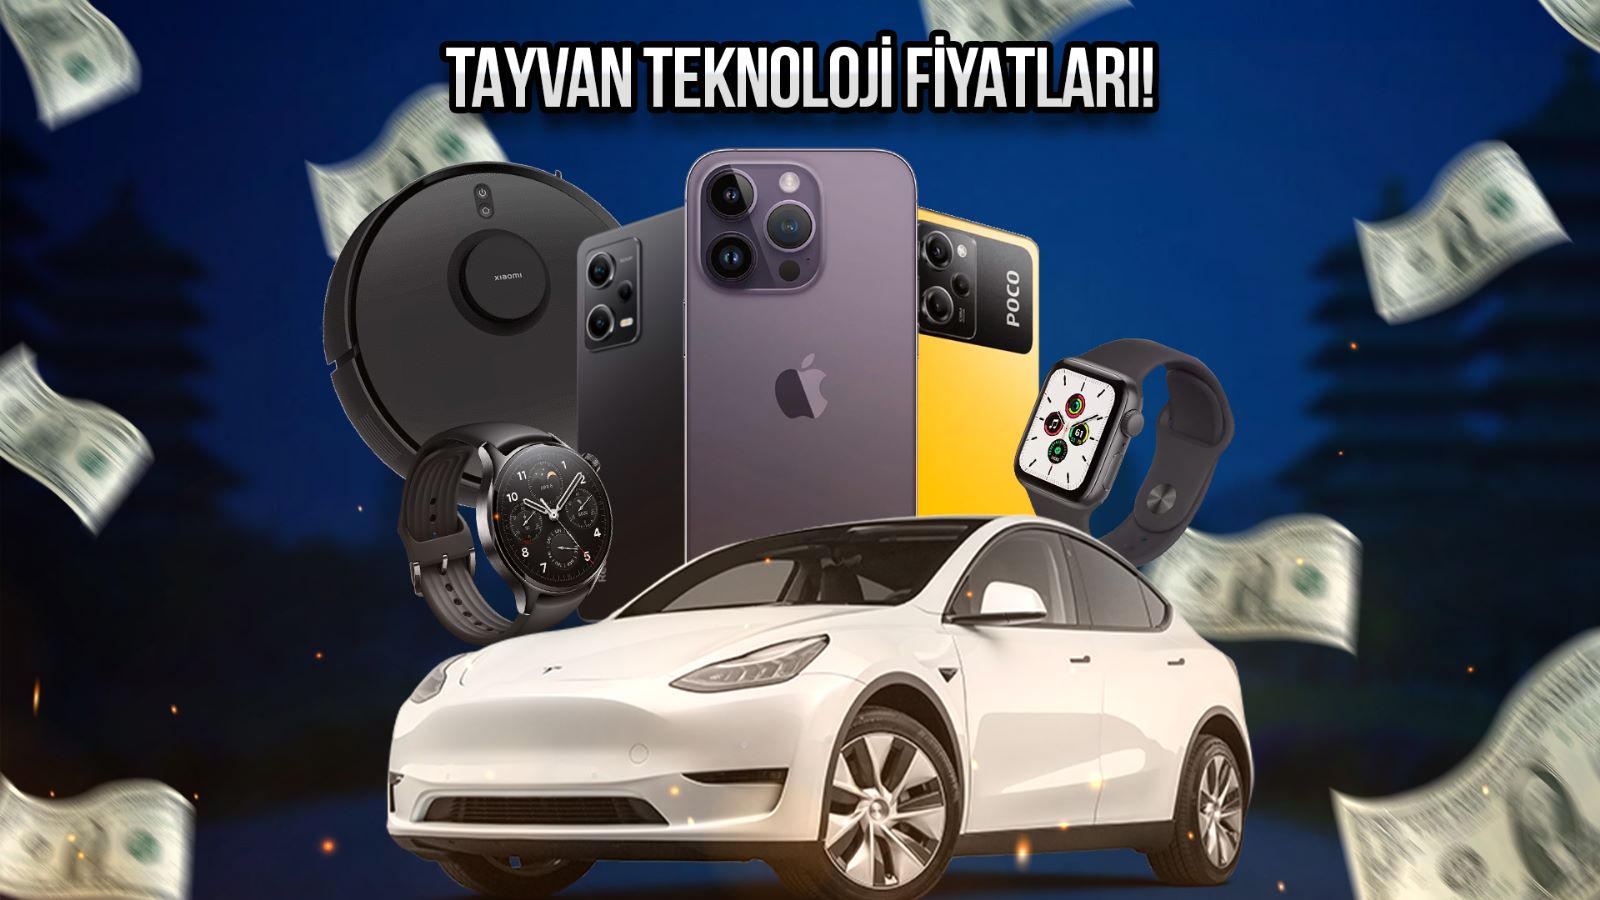 Tayvan teknoloji fiyatları Tesla ve iPhone sudan ucuz mu